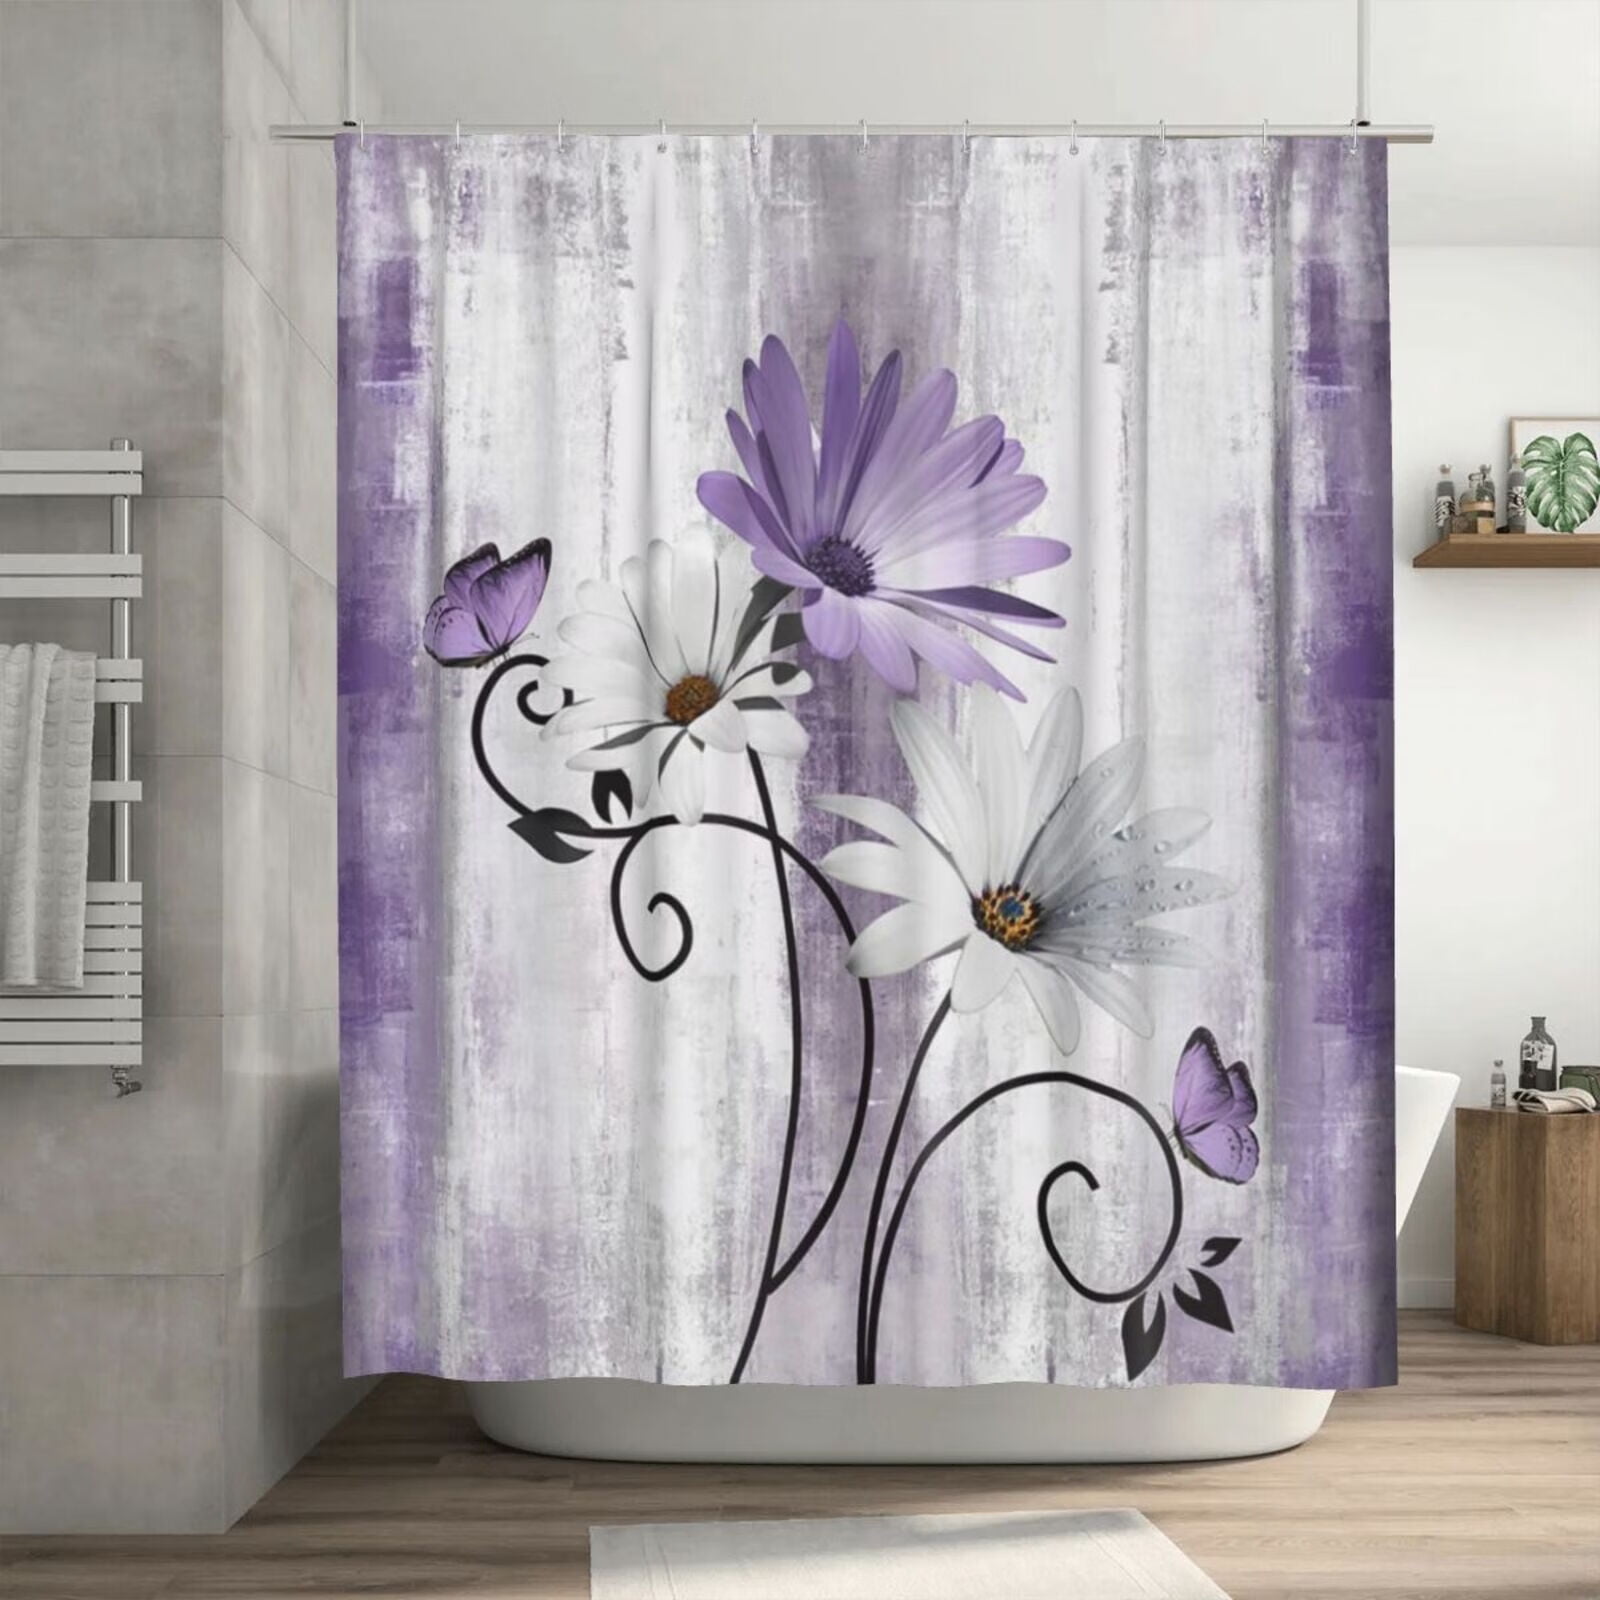 YUSDECOR Cheryl Fleur De Paris Teal Mr Daniels Glam Pretty Bathroom Decor  Bath Shower Curtain 66x72 inch 